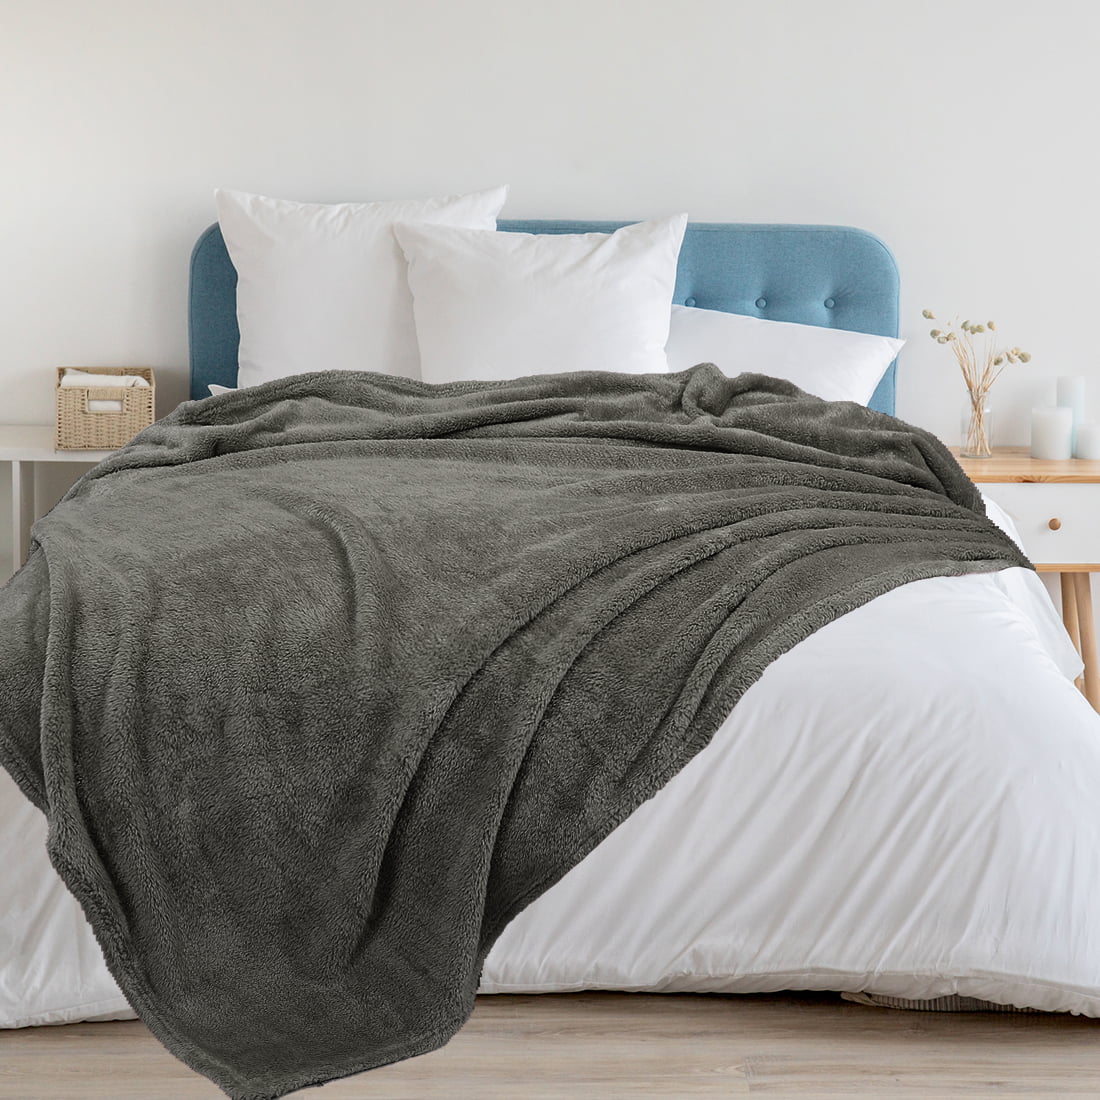 Details about   Blanket Super soft warm blanket velvet blankets bed cover summer quilt 78"x90" 